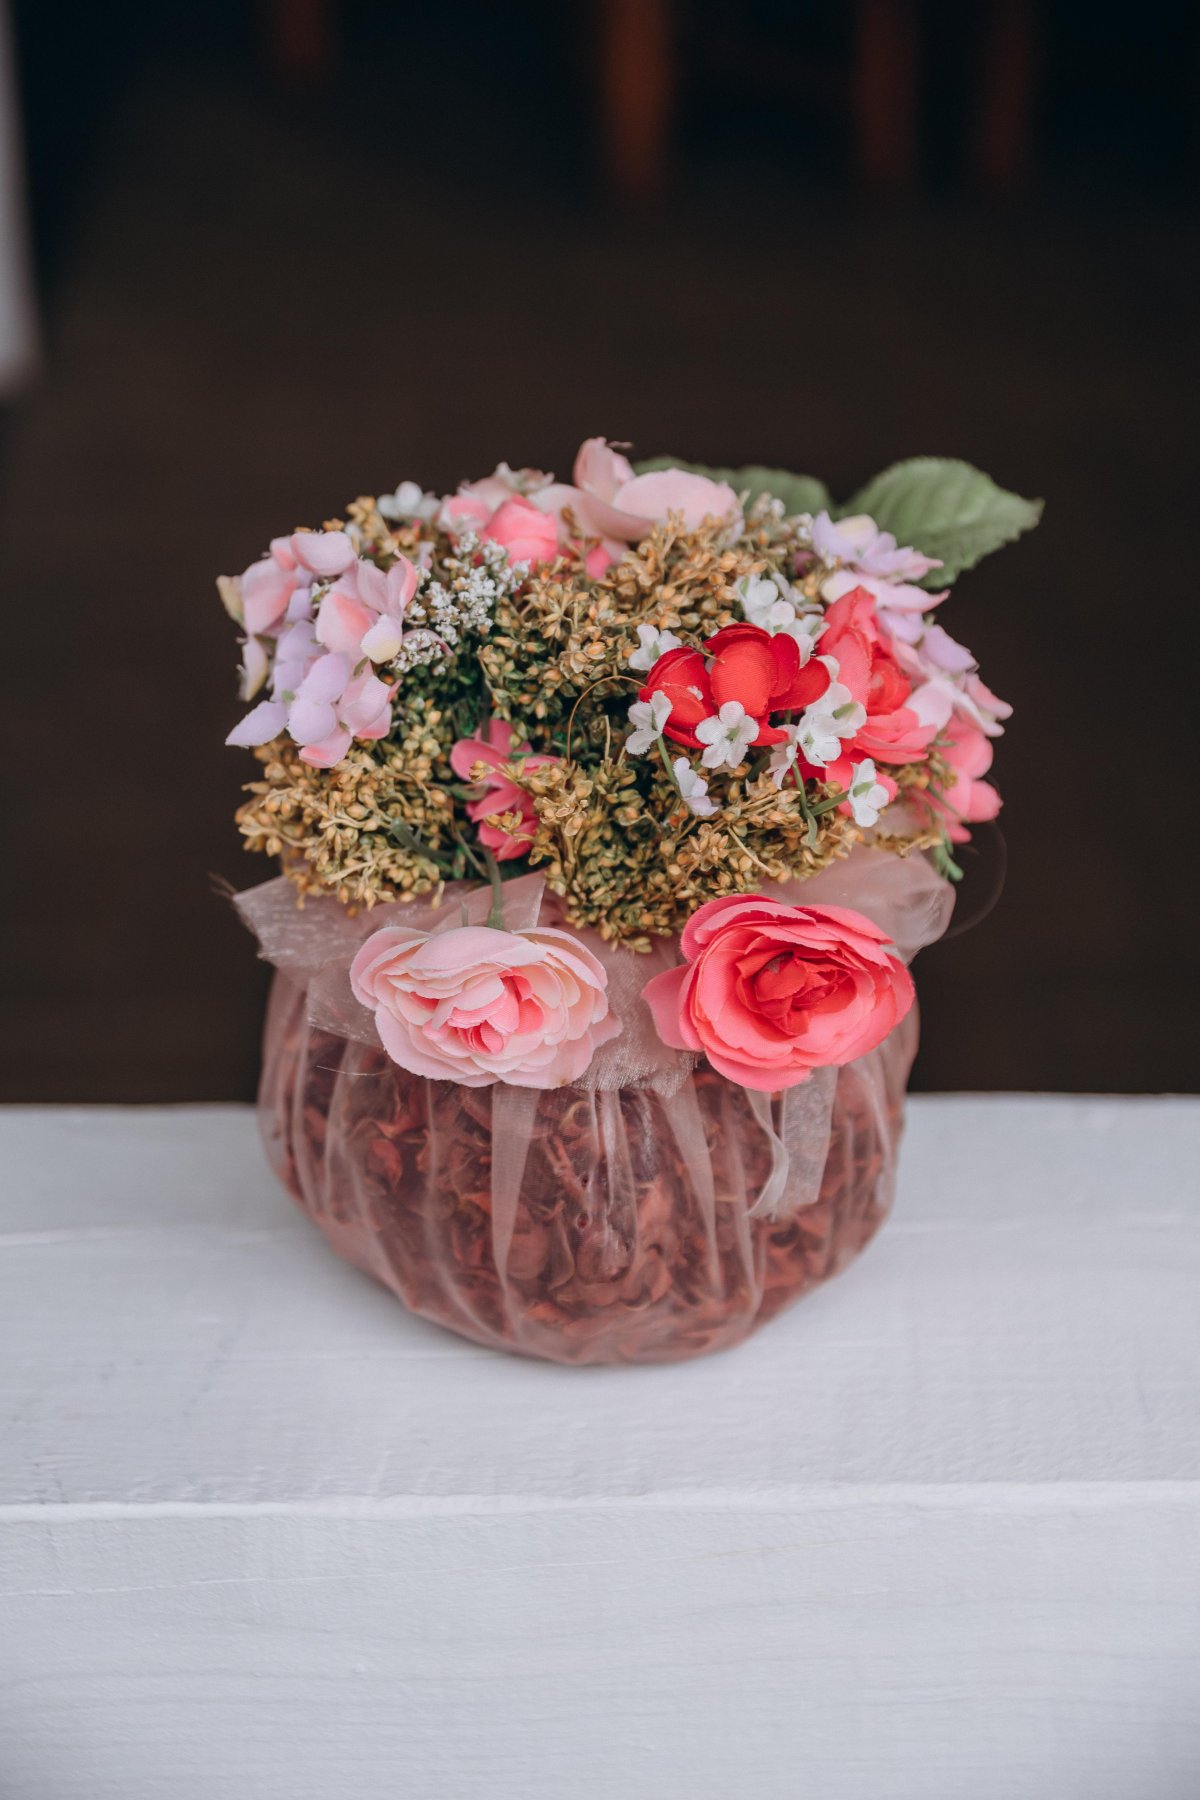 Handmade flower arrangement pictures